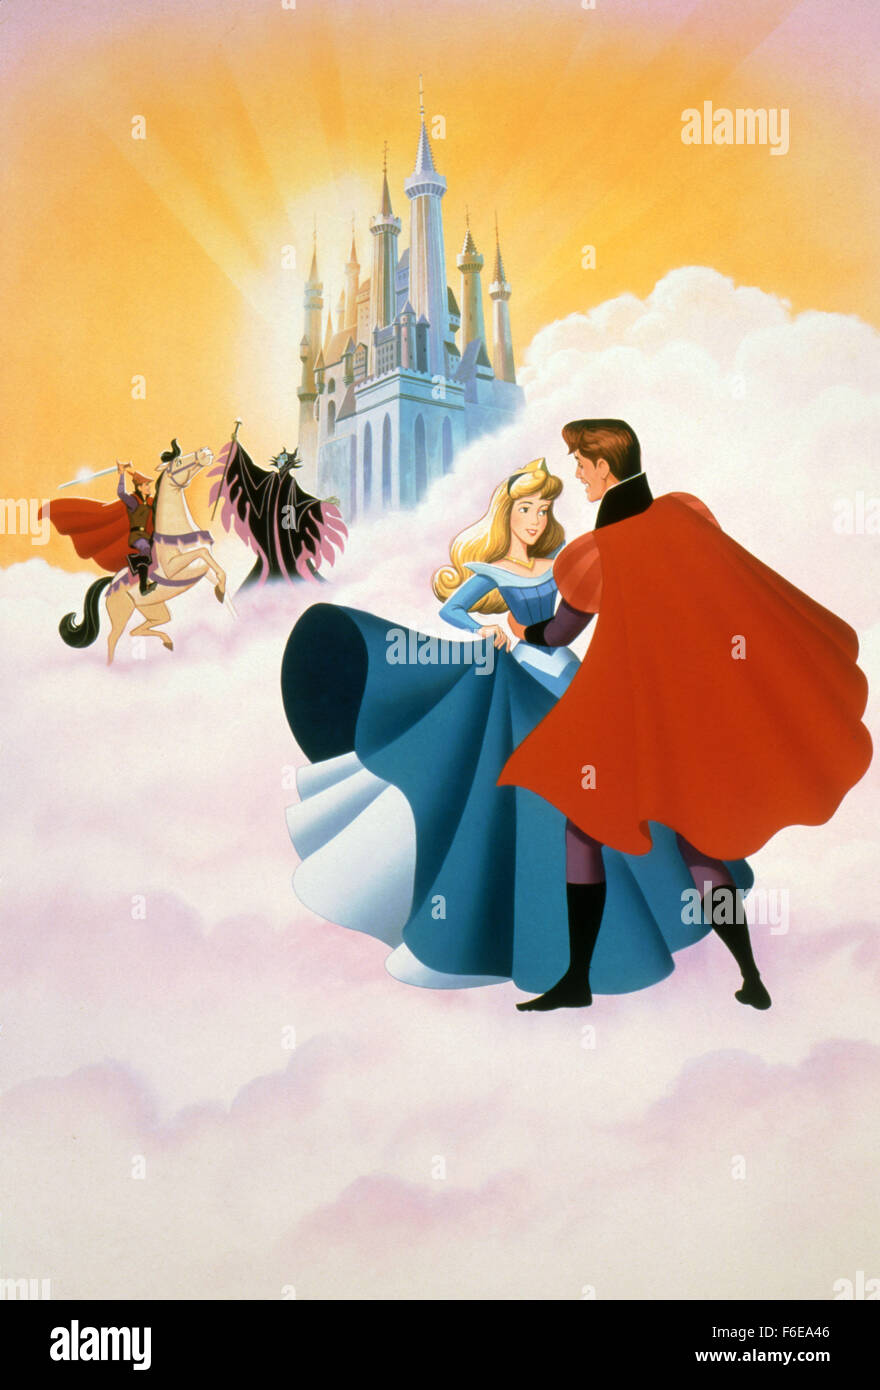 Erscheinungsdatum: 29. Januar 1959. FILMTITEL: Dornröschen. STUDIO: Walt Disney. PLOT: Eine brüskiert boshafte Fee wirft einen Fluch auf eine Prinzessin, die nur ein Prinz mit Hilfe von drei gute Feen brechen kann. IM BILD:. Stockfoto